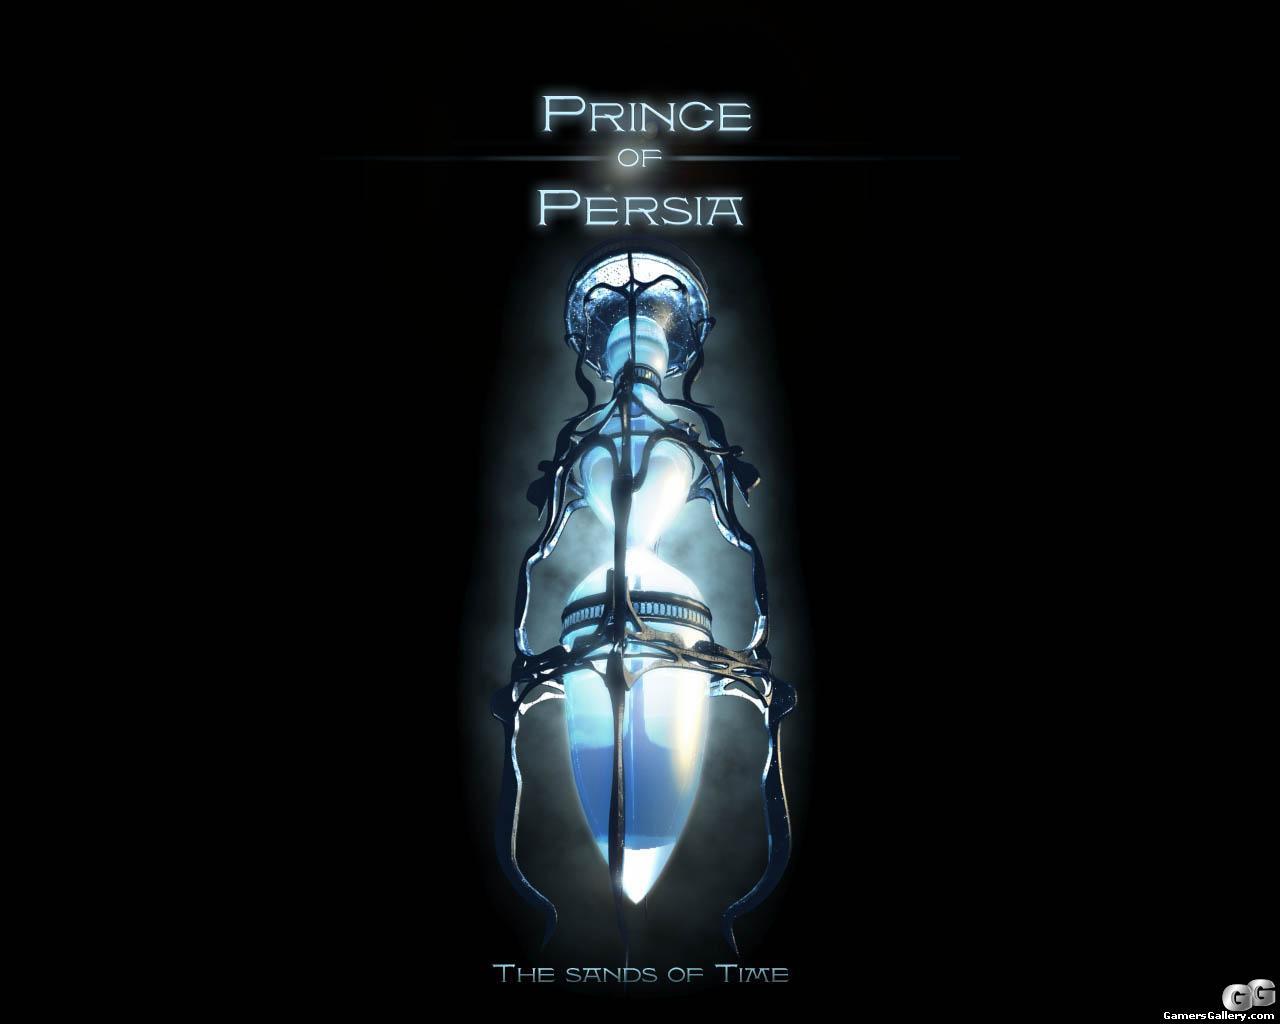 Скачать картинку Принц Персии (Prince Of Persia), Игры в телефон бесплатно.